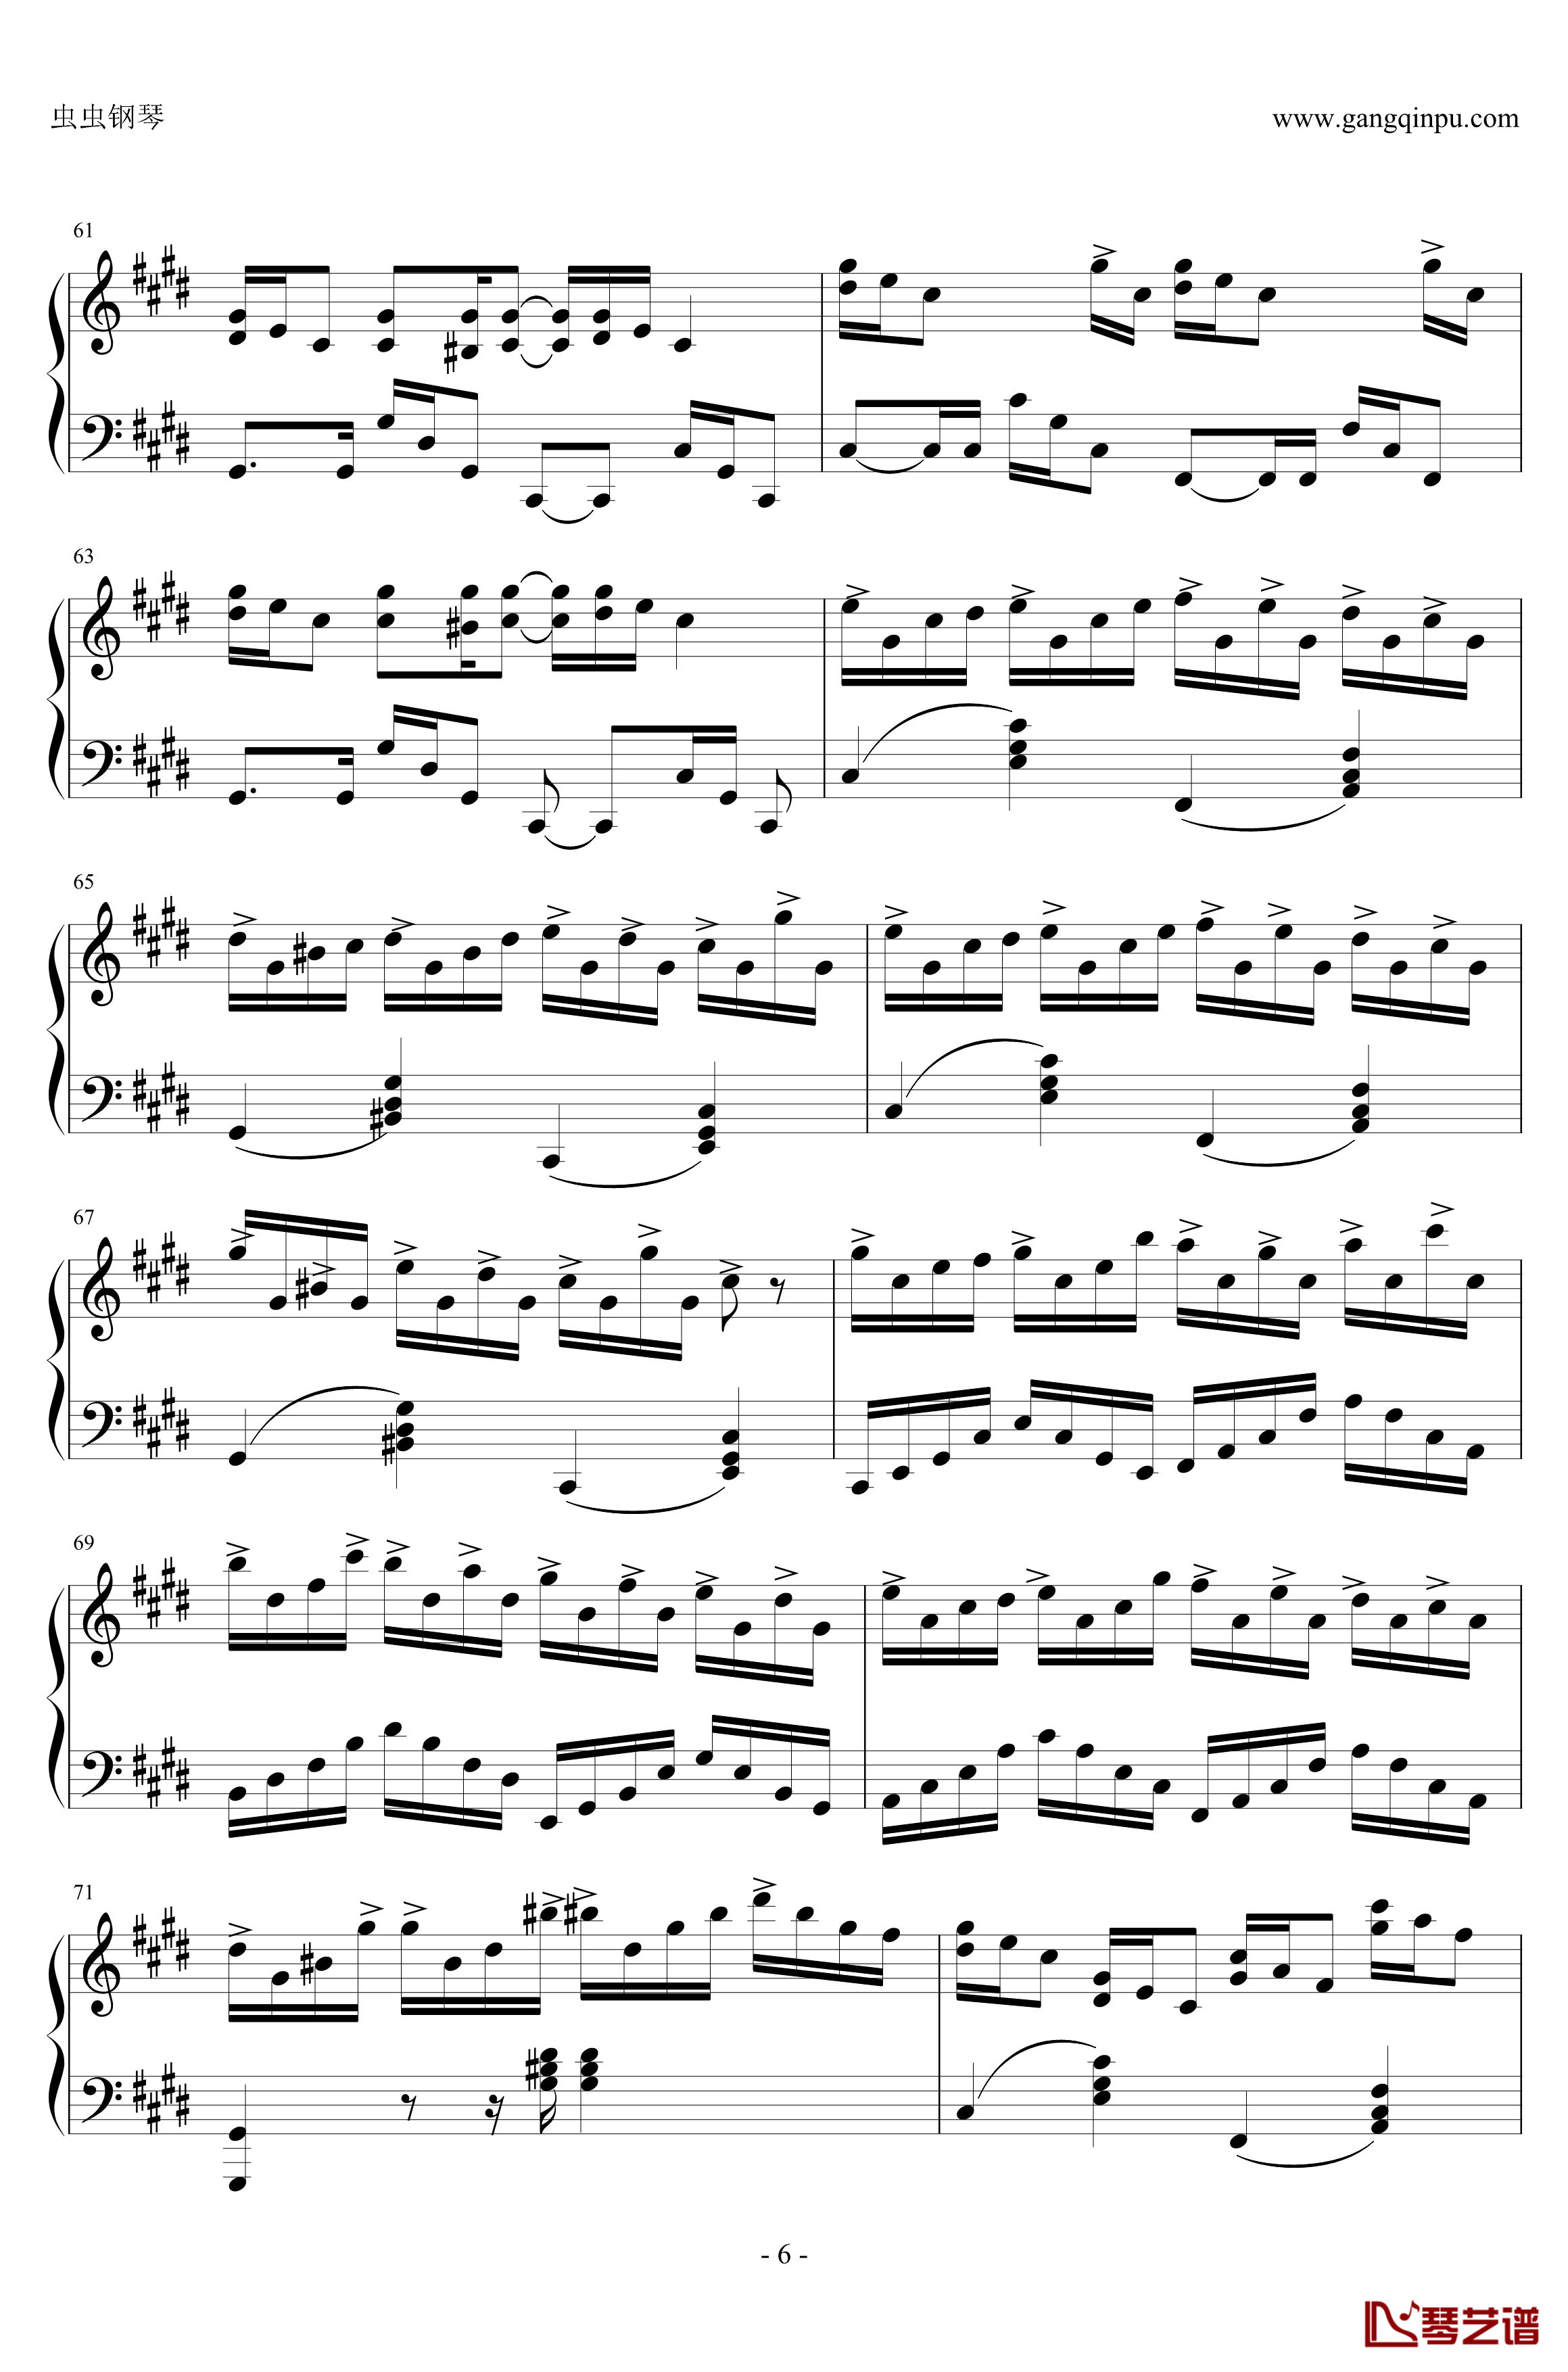 克罗地亚狂想曲钢琴谱-与原录音完全一致-马克西姆-Maksim·Mrvica6